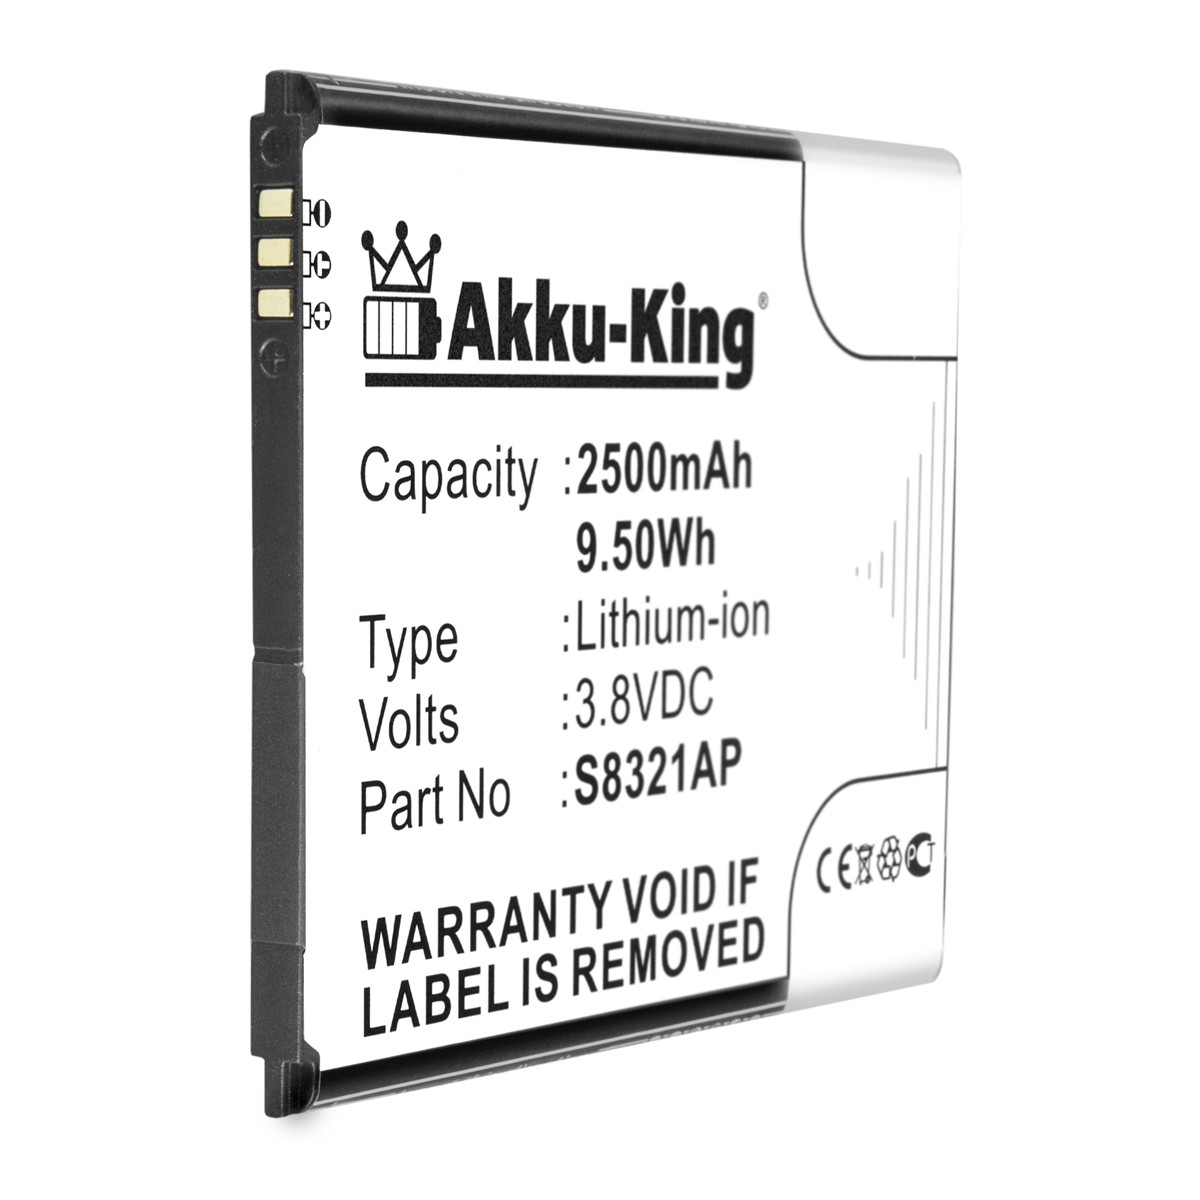 AKKU-KING Akku kompatibel Volt, Wiko 2500mAh S8321AP Li-Ion 3.8 Handy-Akku, mit